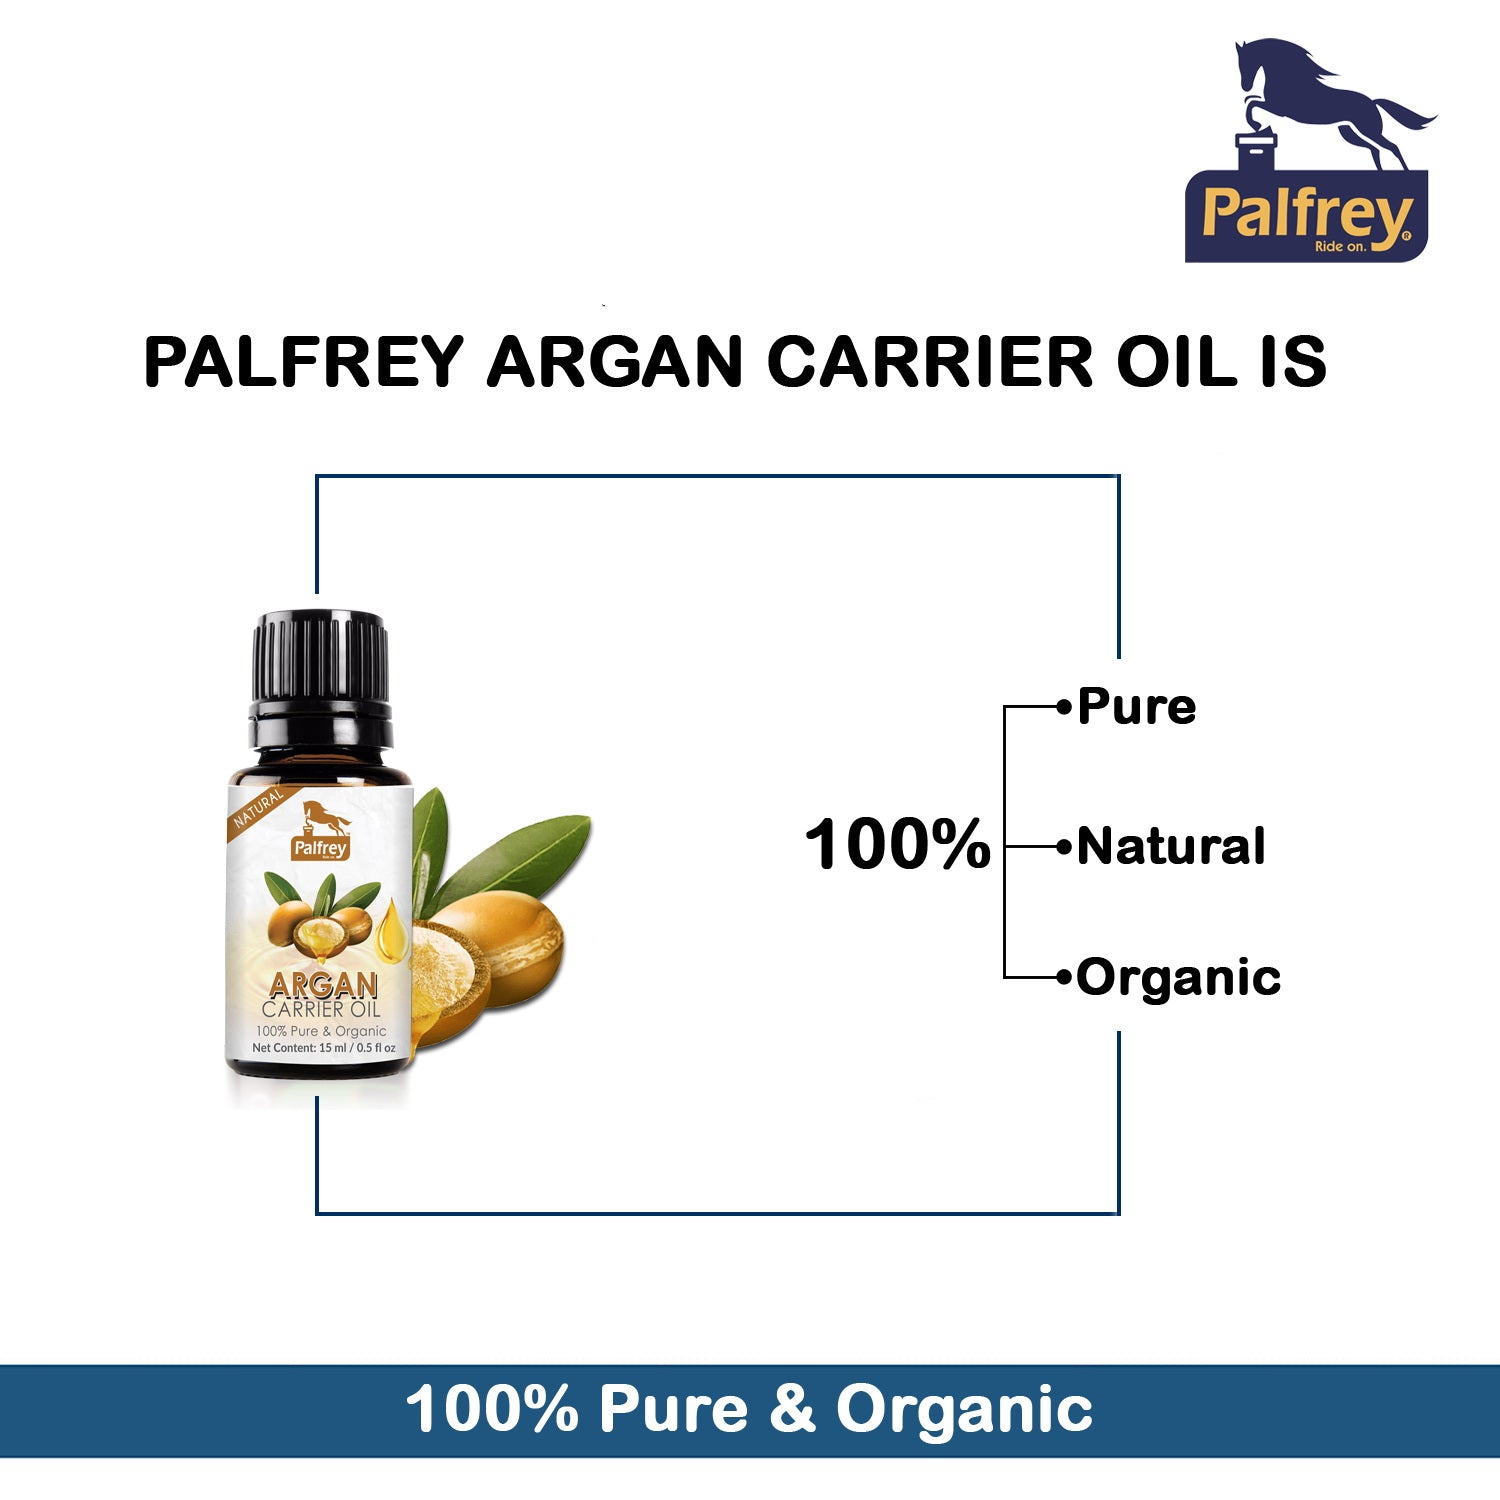 Palfrey Argan Carrier Oil 15ml